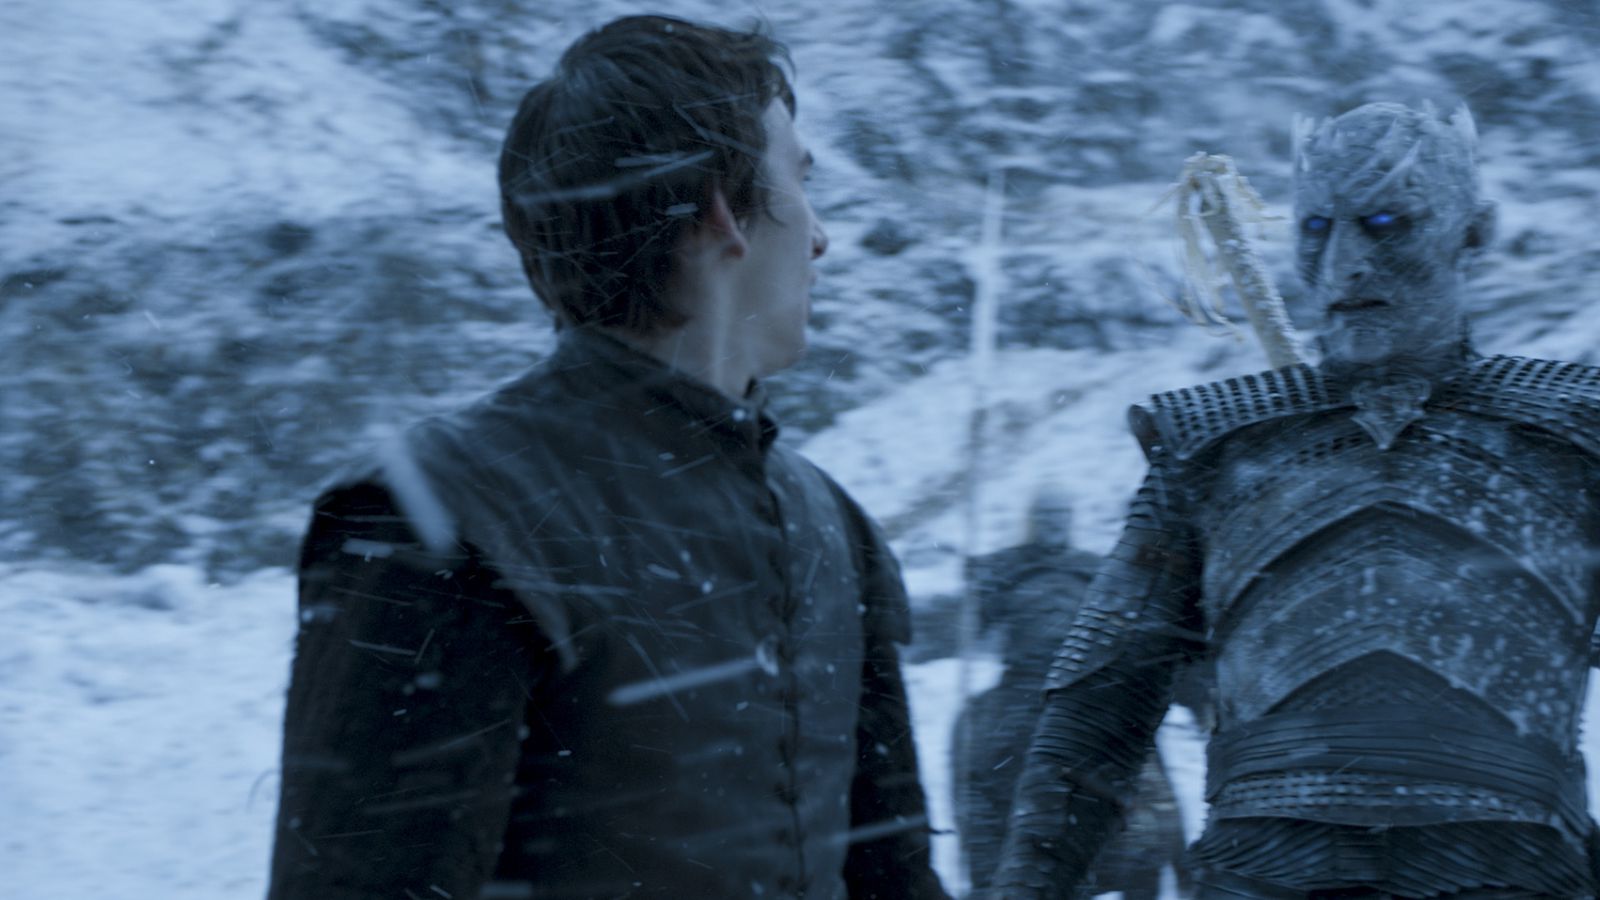 Munching Sociale wetenschappen Zelden Game of Thrones season 6: Benjen Stark's return, explained - Vox